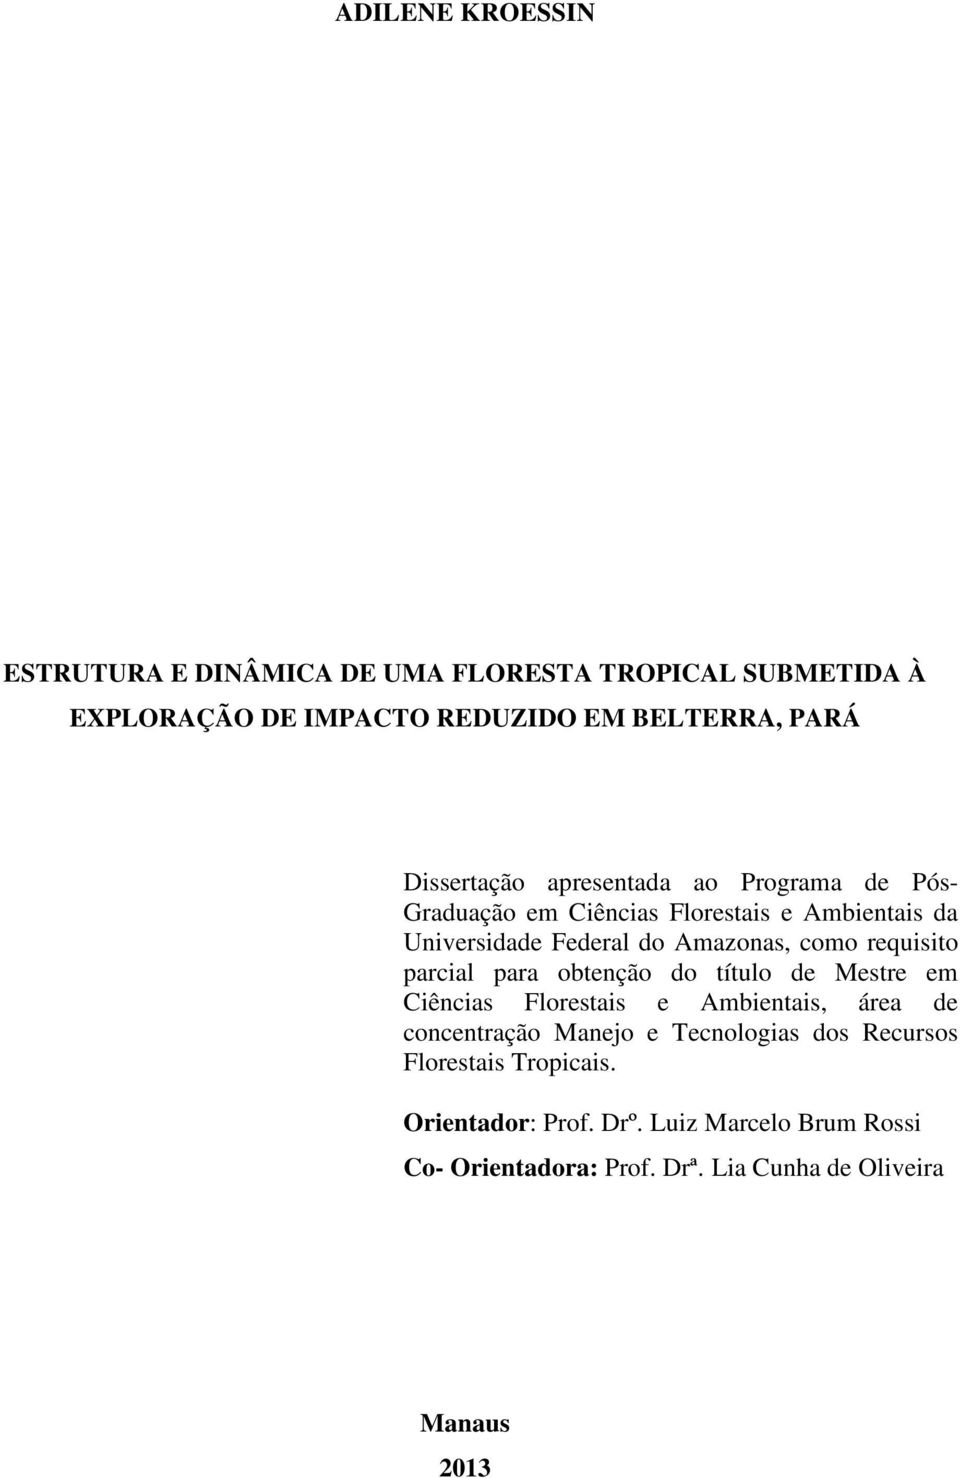 requisito parcial para obtenção do título de Mestre em Ciências Florestais e Ambientais, área de concentração Manejo e Tecnologias